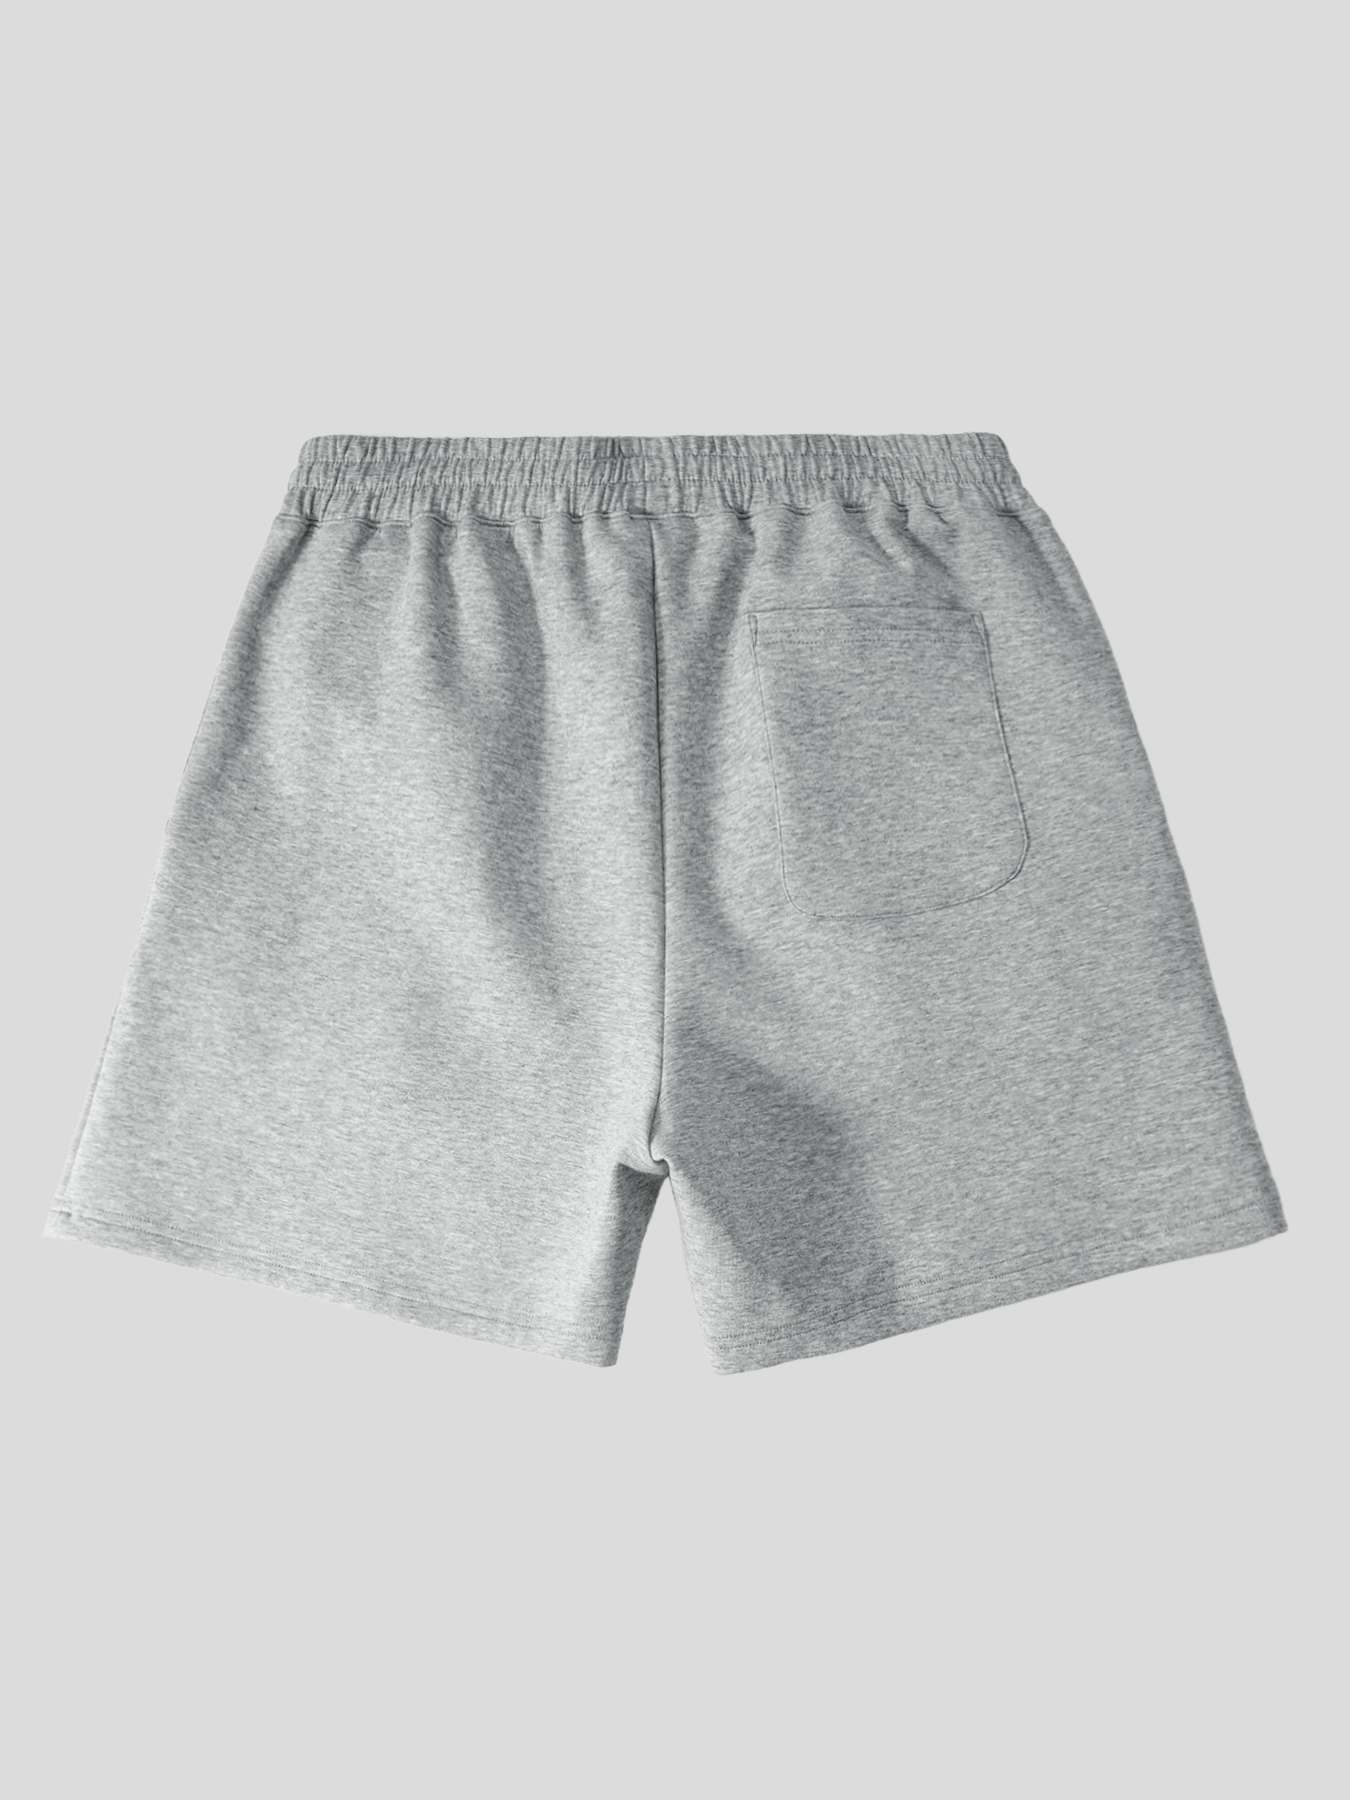 Modal Blend 2.0 Active Comfort 6&quot; Shorts